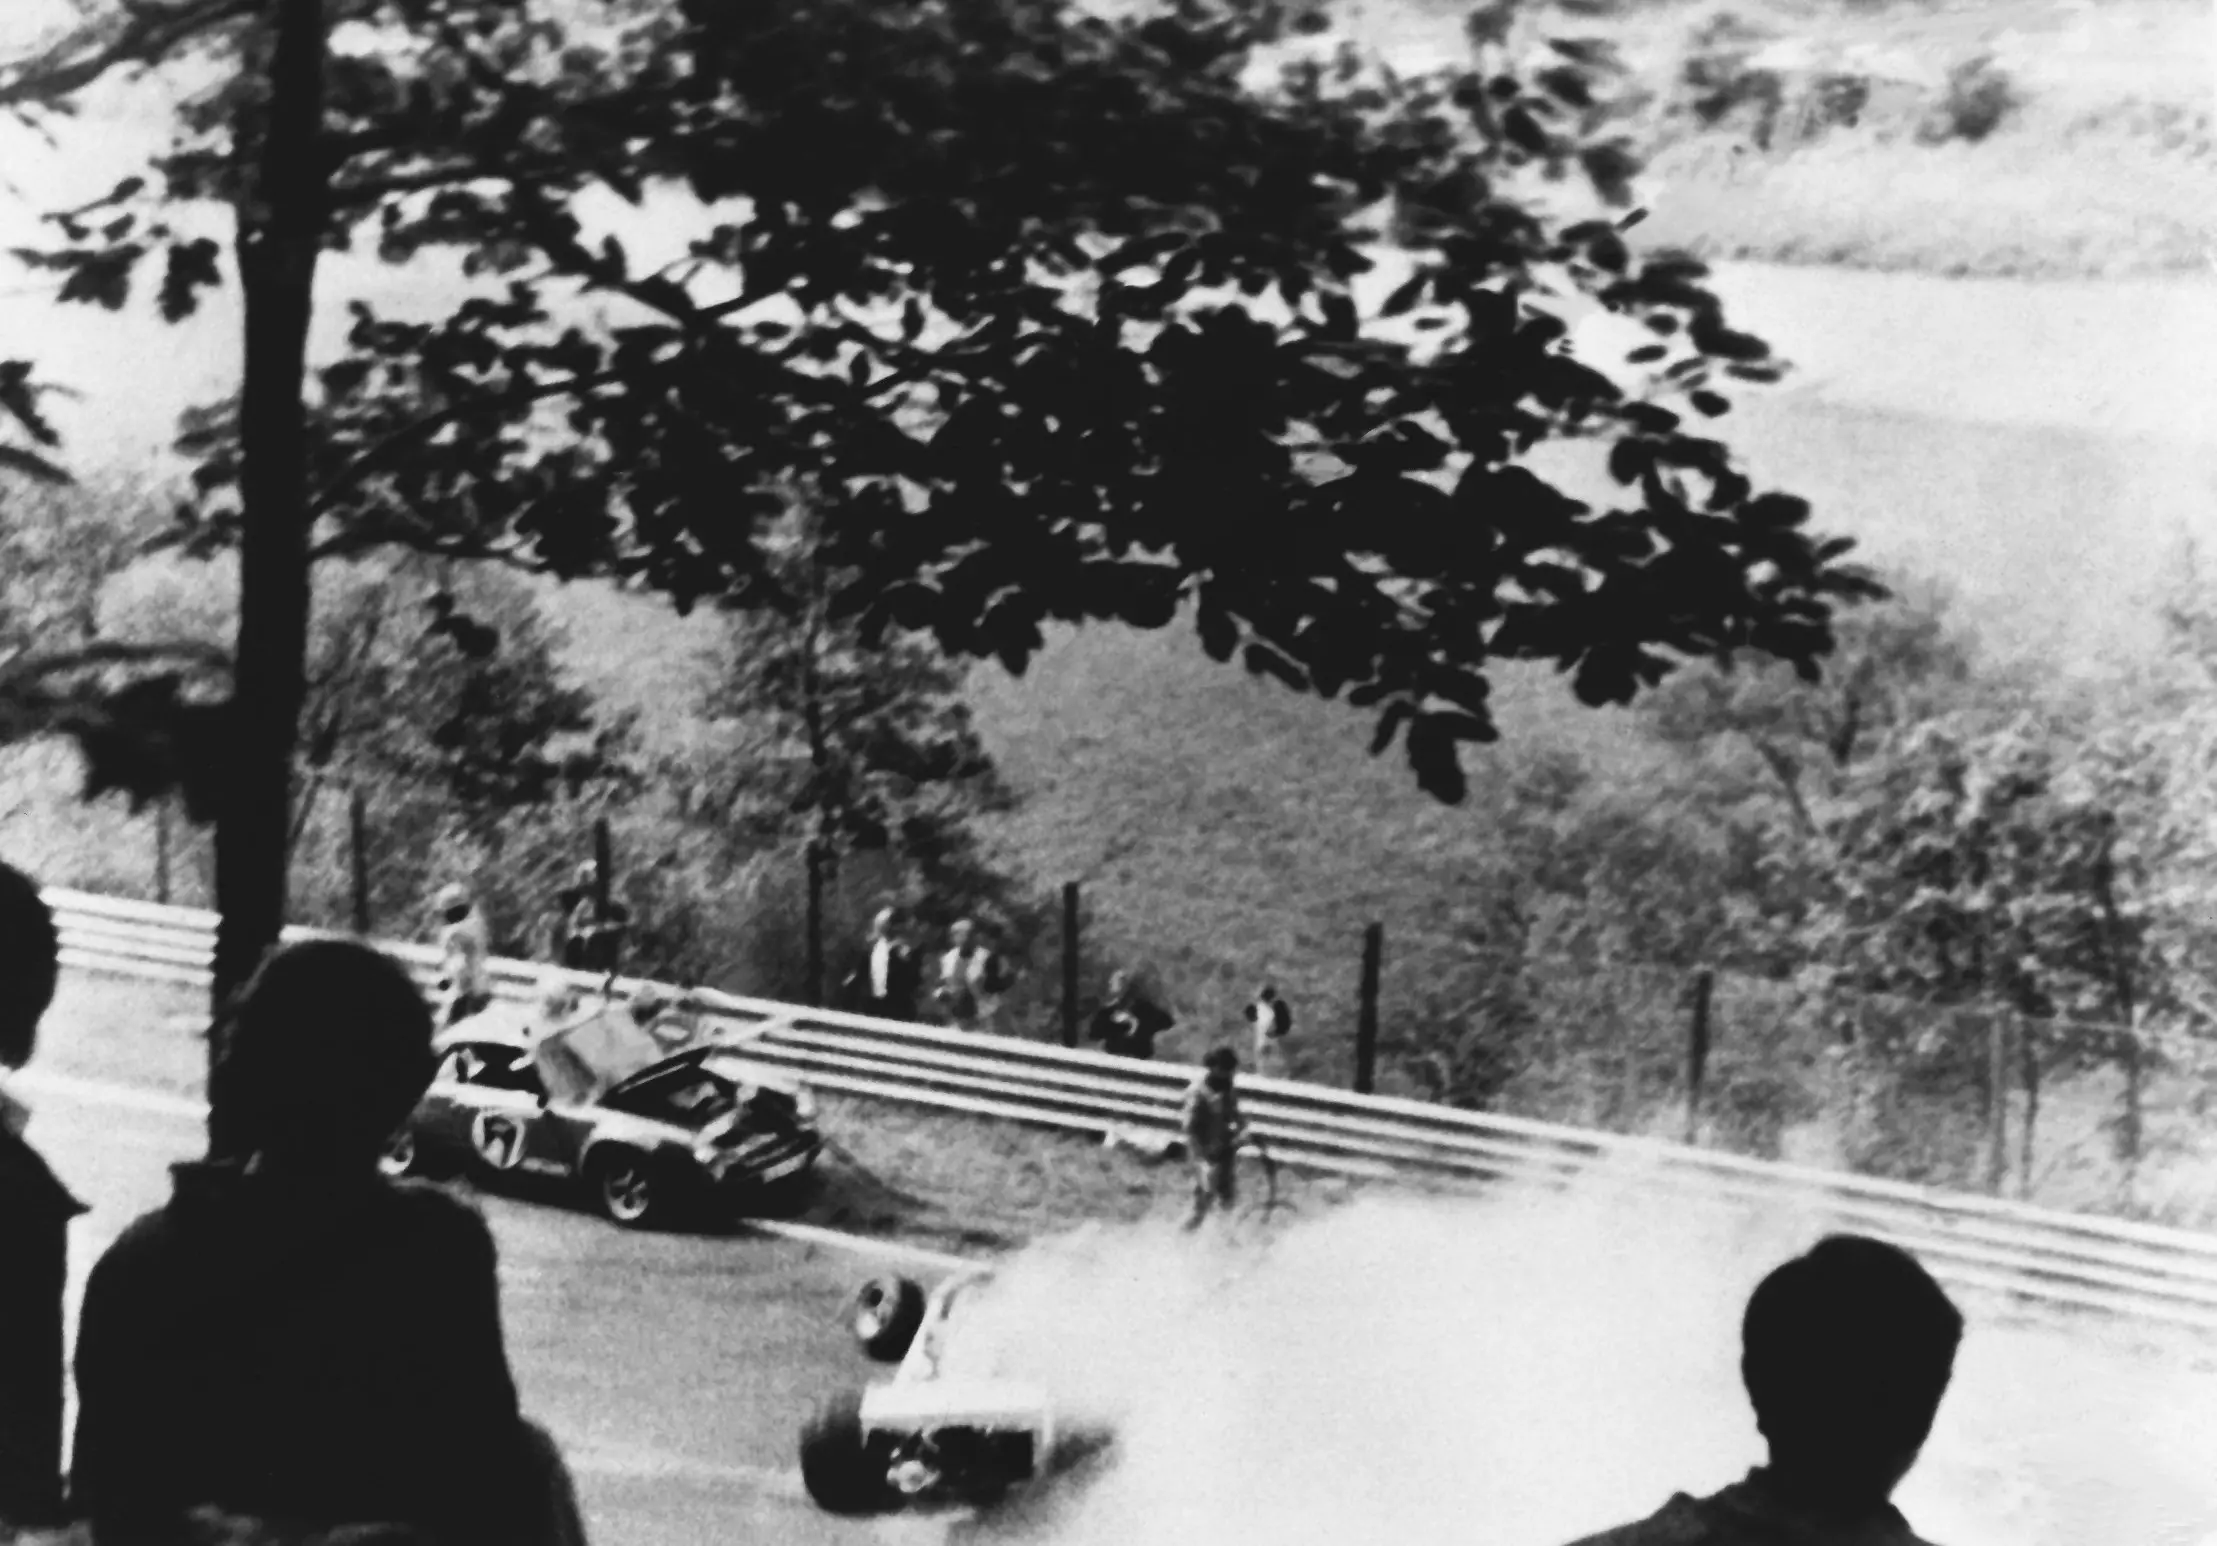 Lauda's crash in 1976.